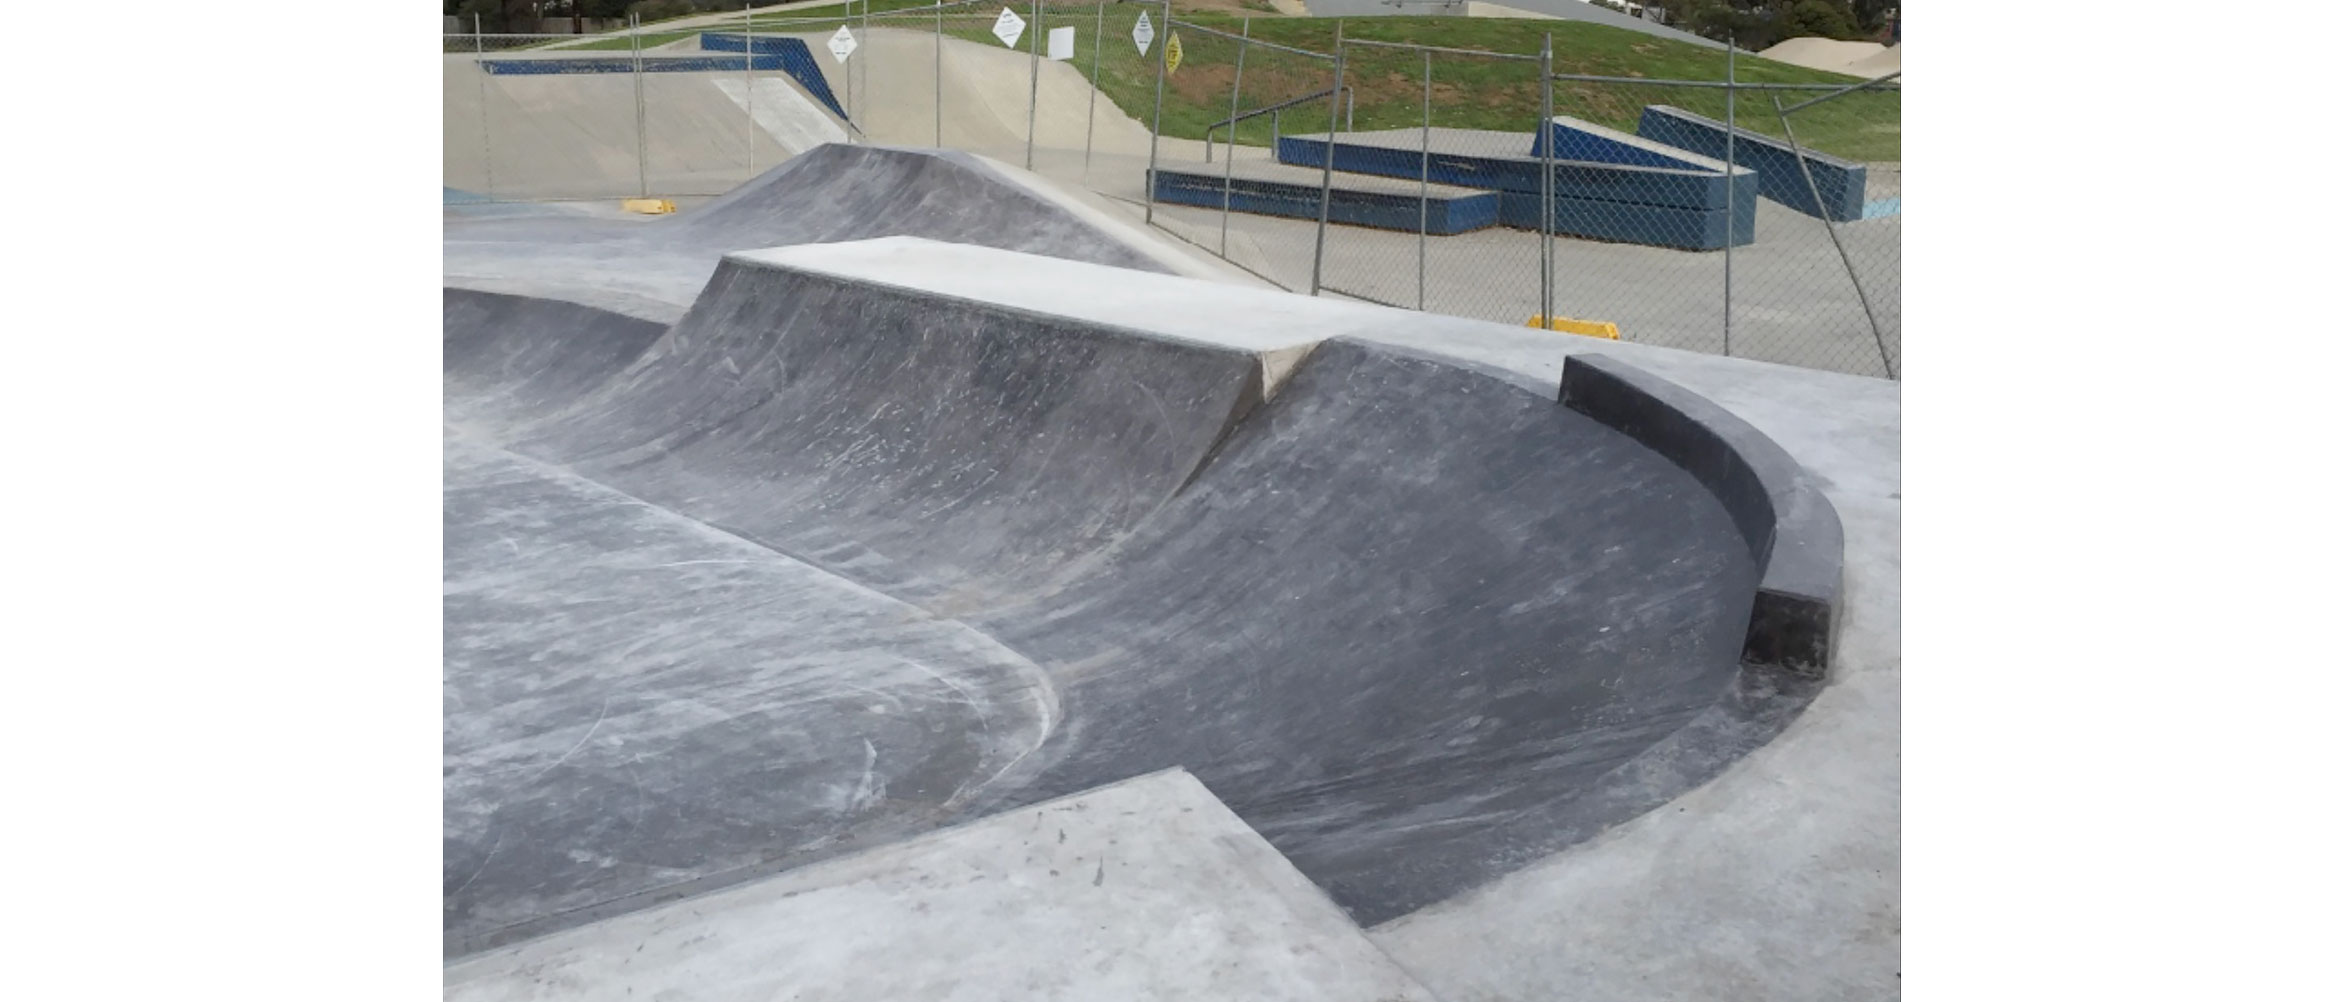 Altona Meadows skate park build